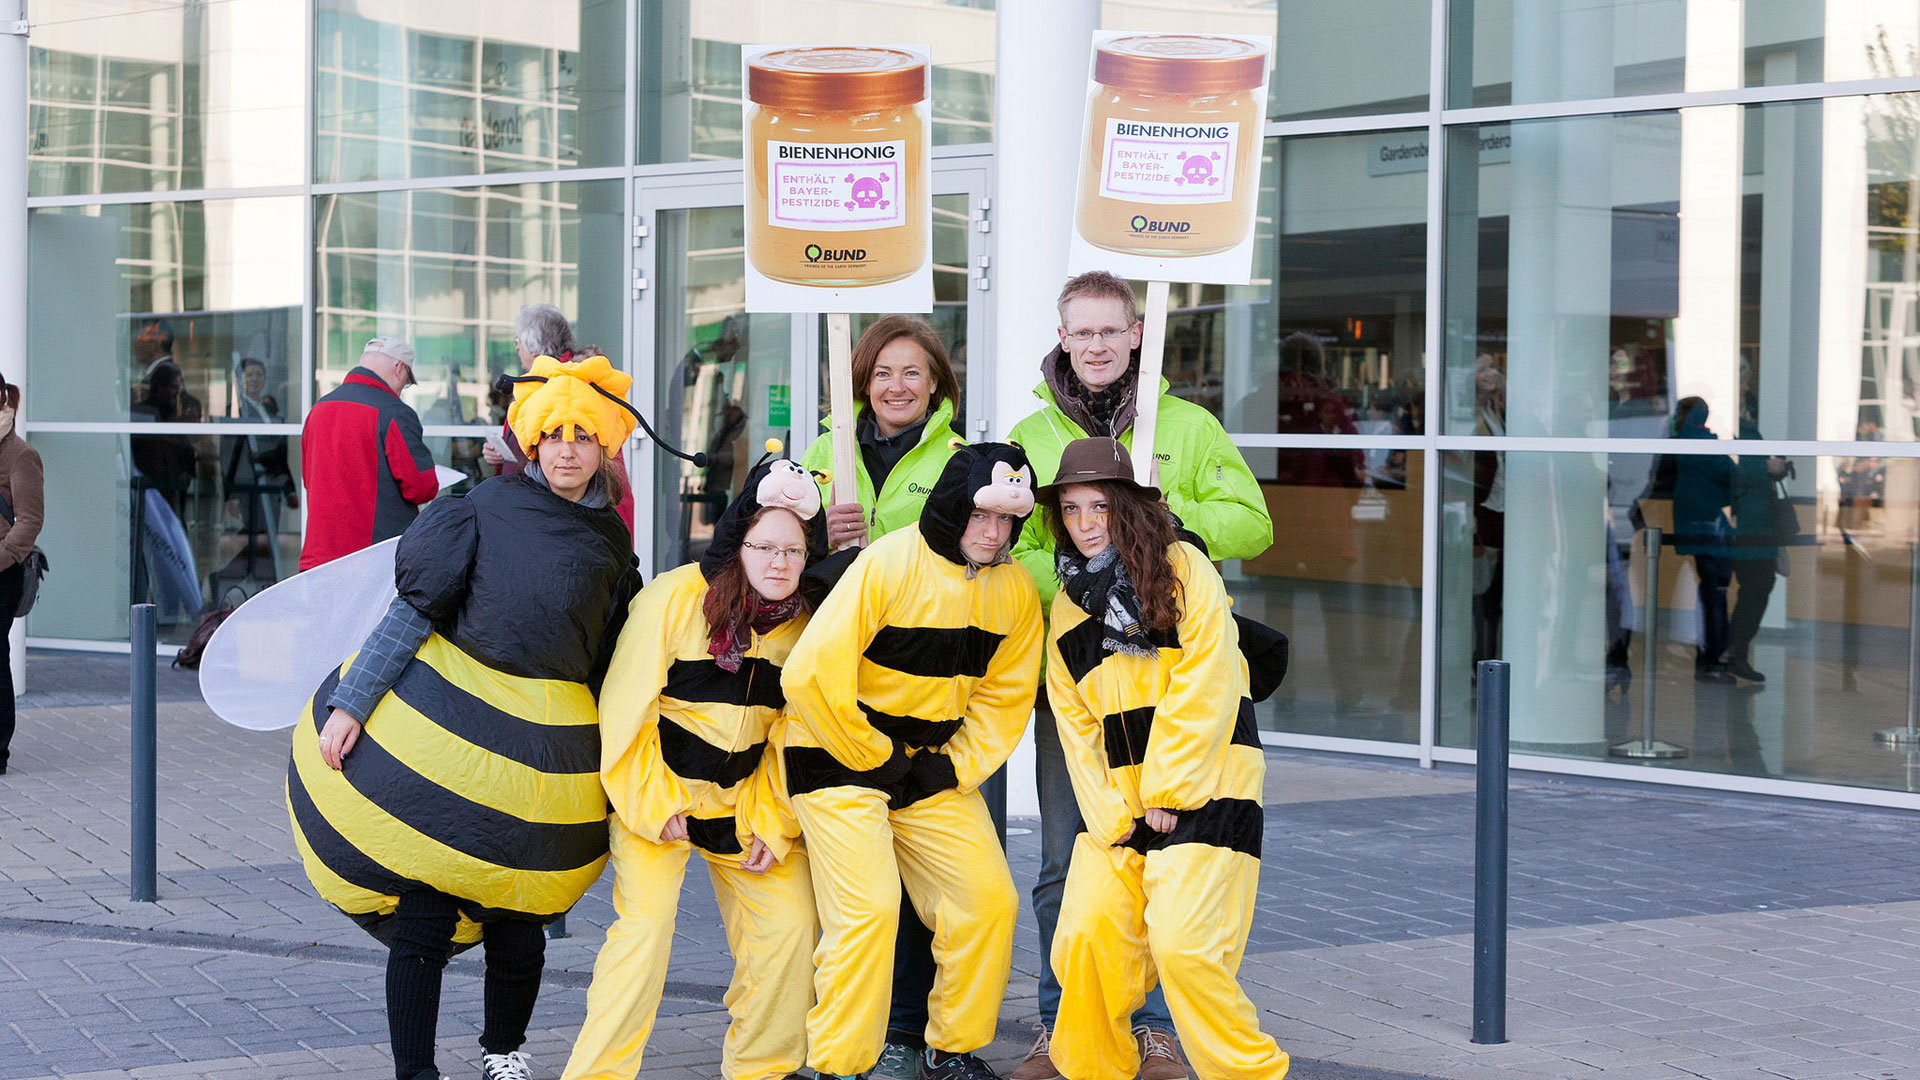 Protest bei Bayer-Hauptversammlung gegen bienengefährdende Pestizide und Gift im Honig